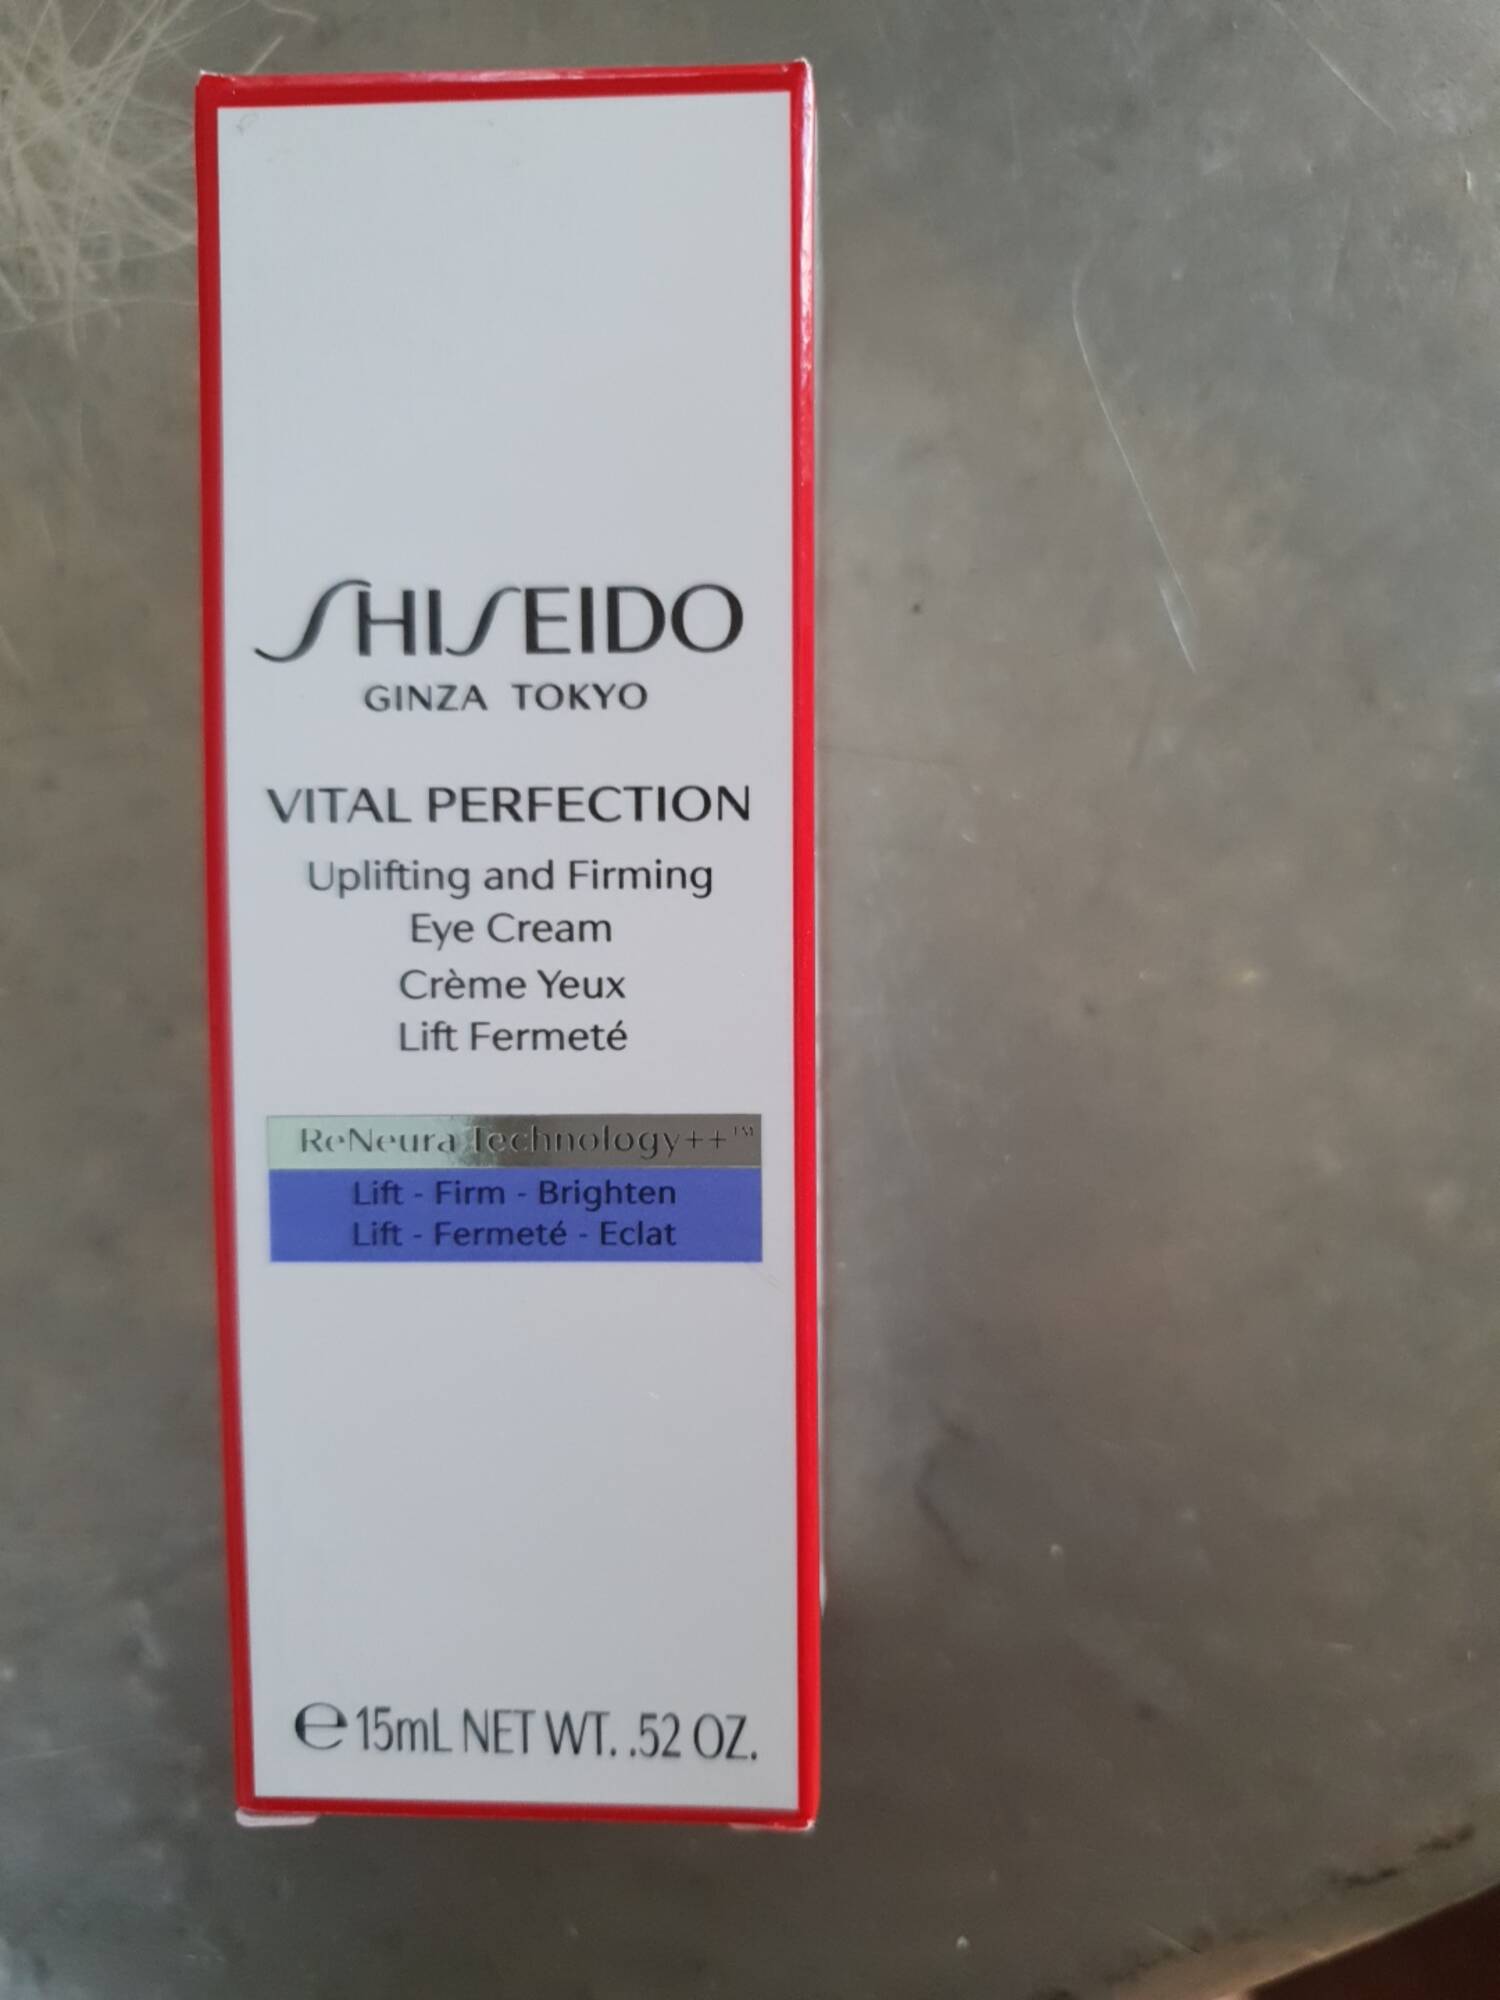 SHISEIDO - Vital perfection - Crème yeux lift fermenté